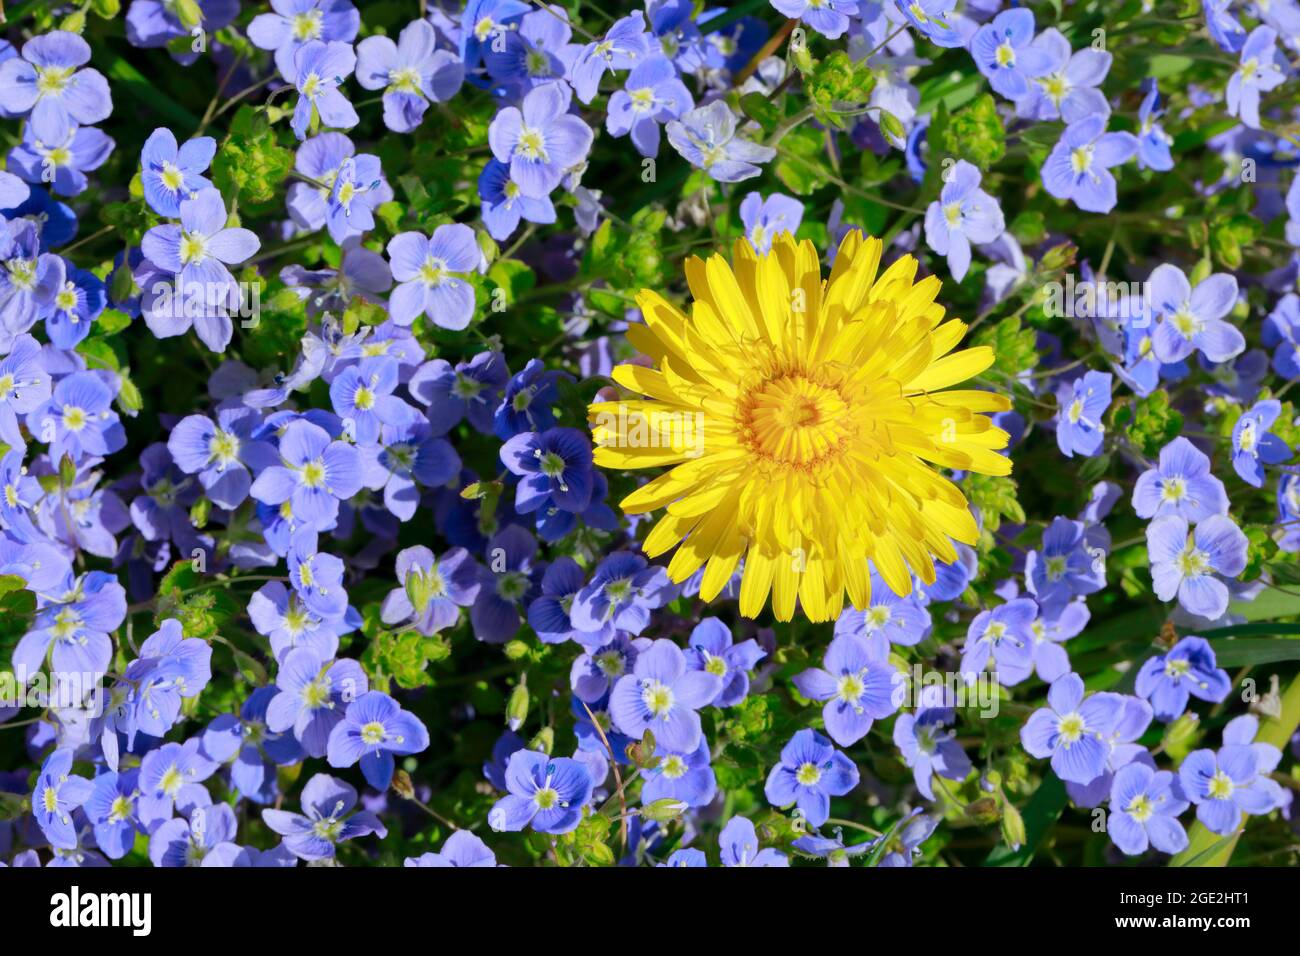 Slender Speedwell (Veronica filiformis) und Dandelion (Taraxacum). Blumen  von oben gesehen. Schweiz Stockfotografie - Alamy